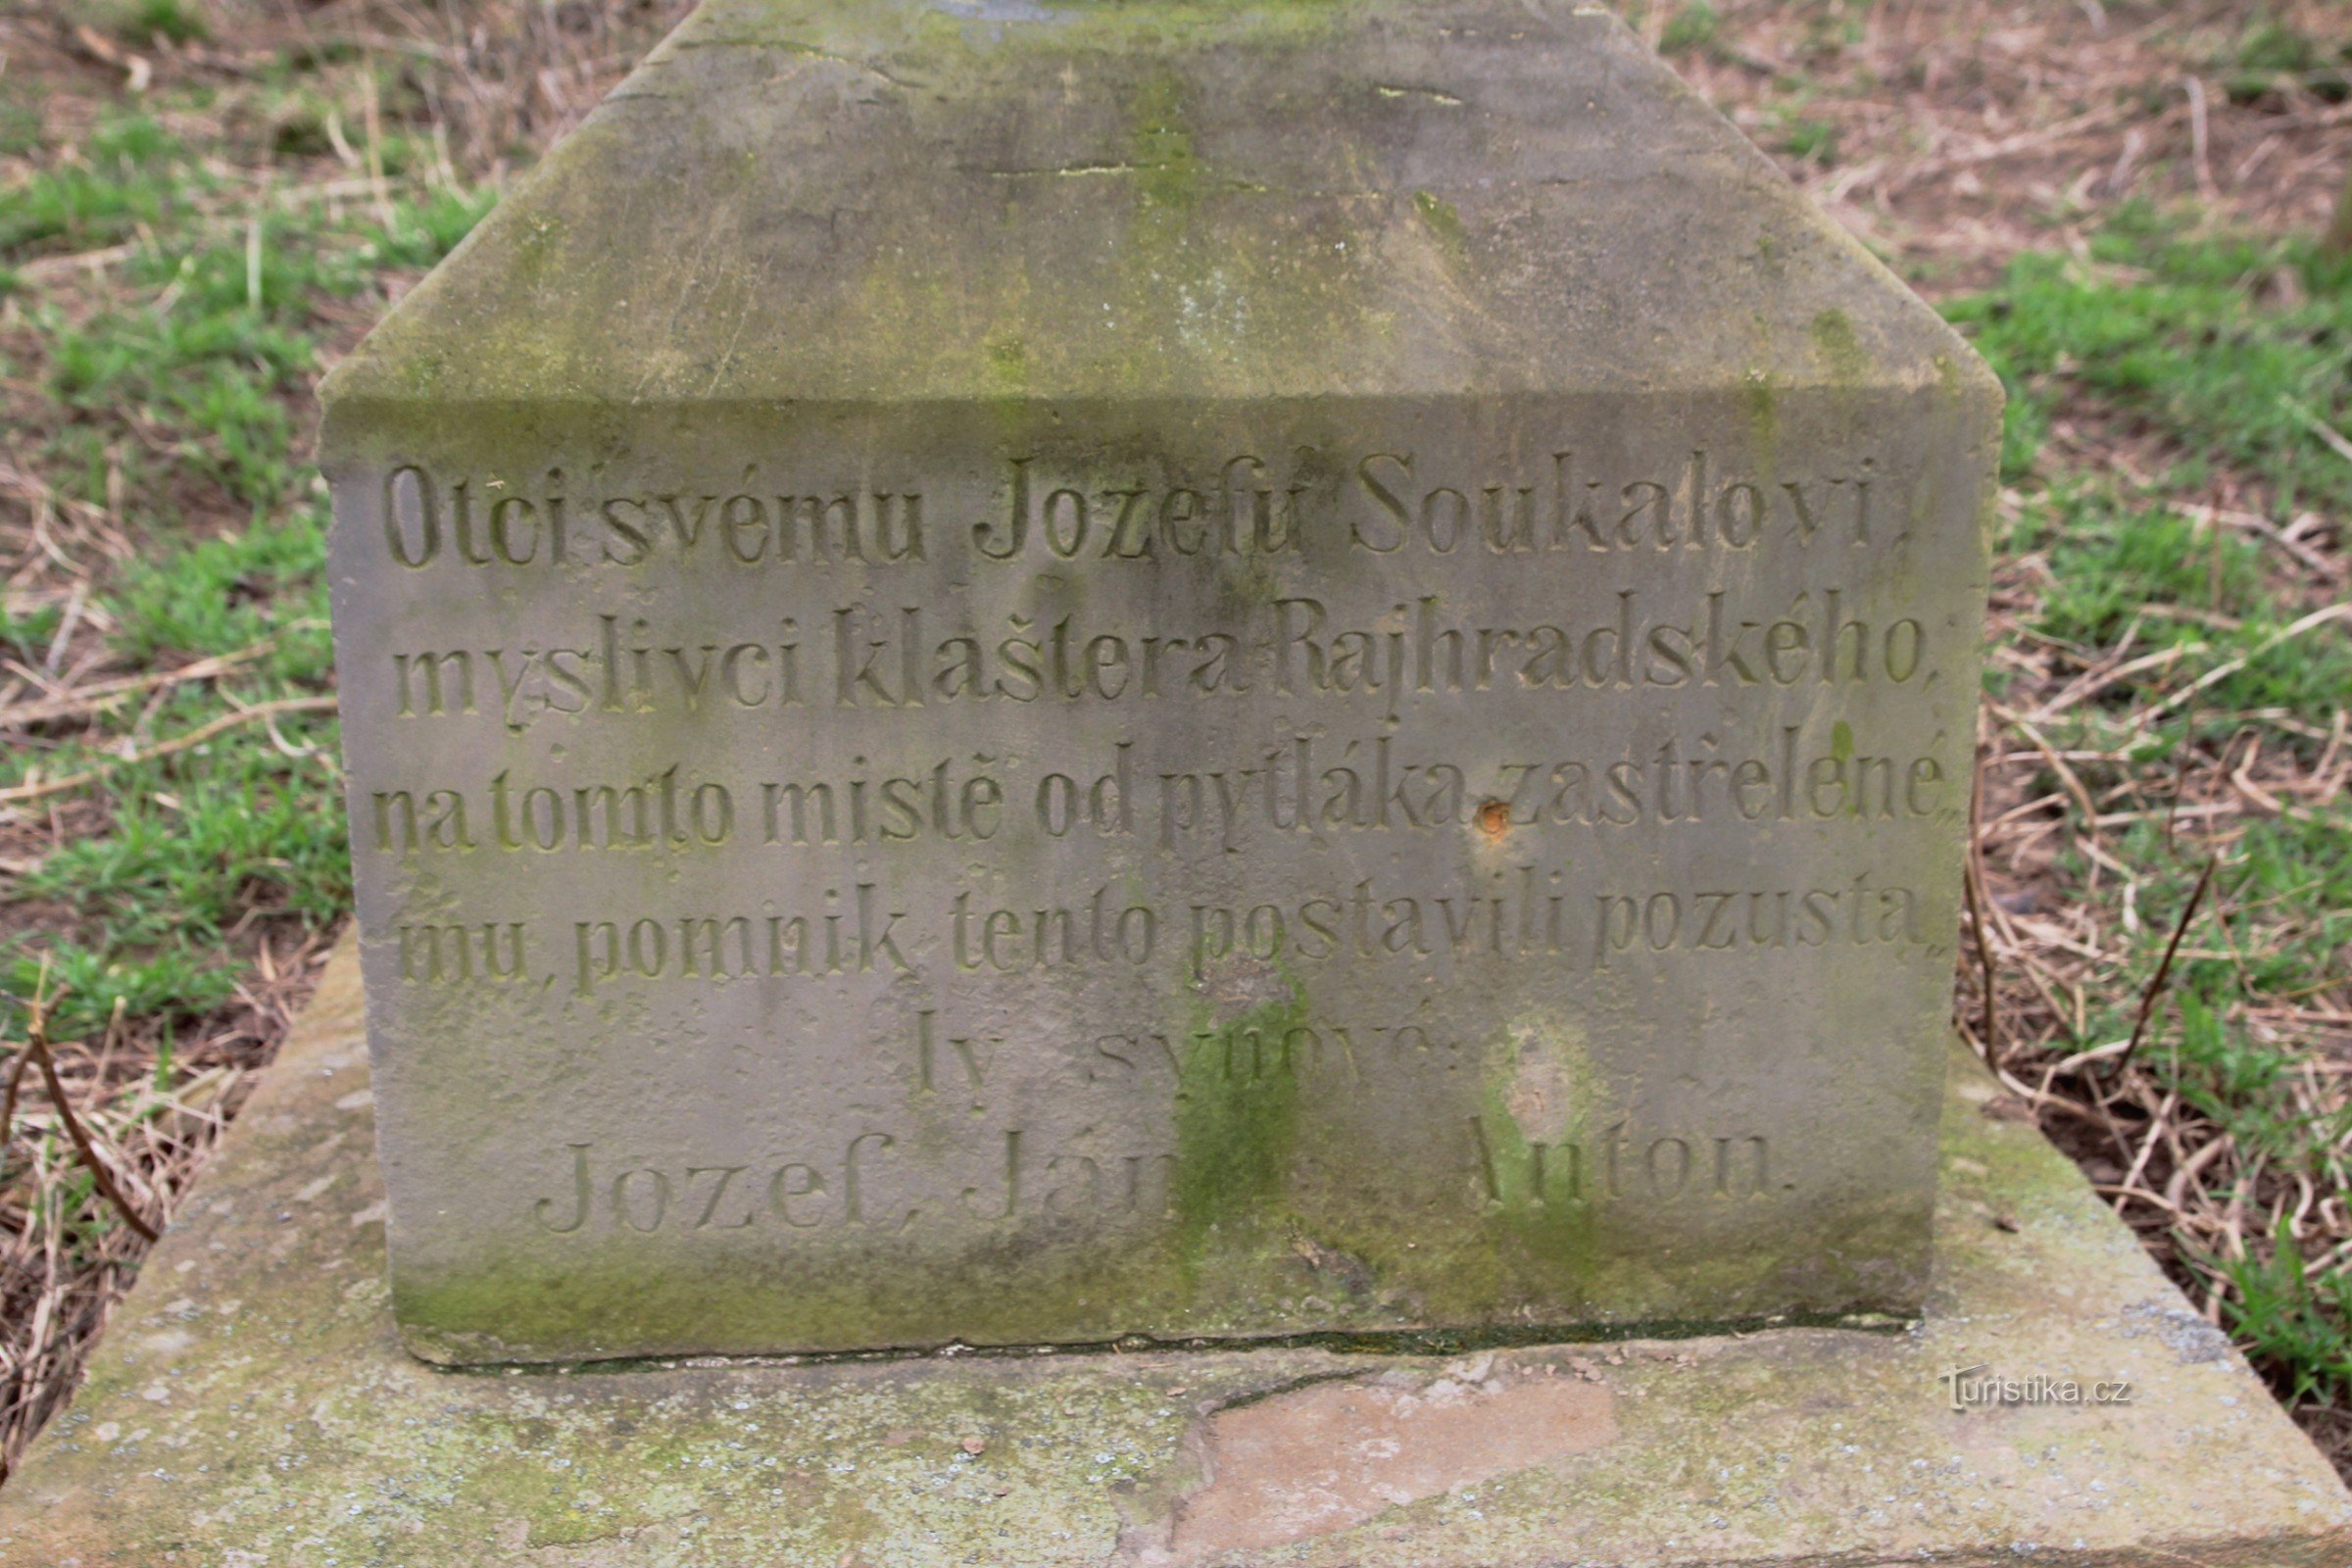 Фрагмент надписи на памятнике